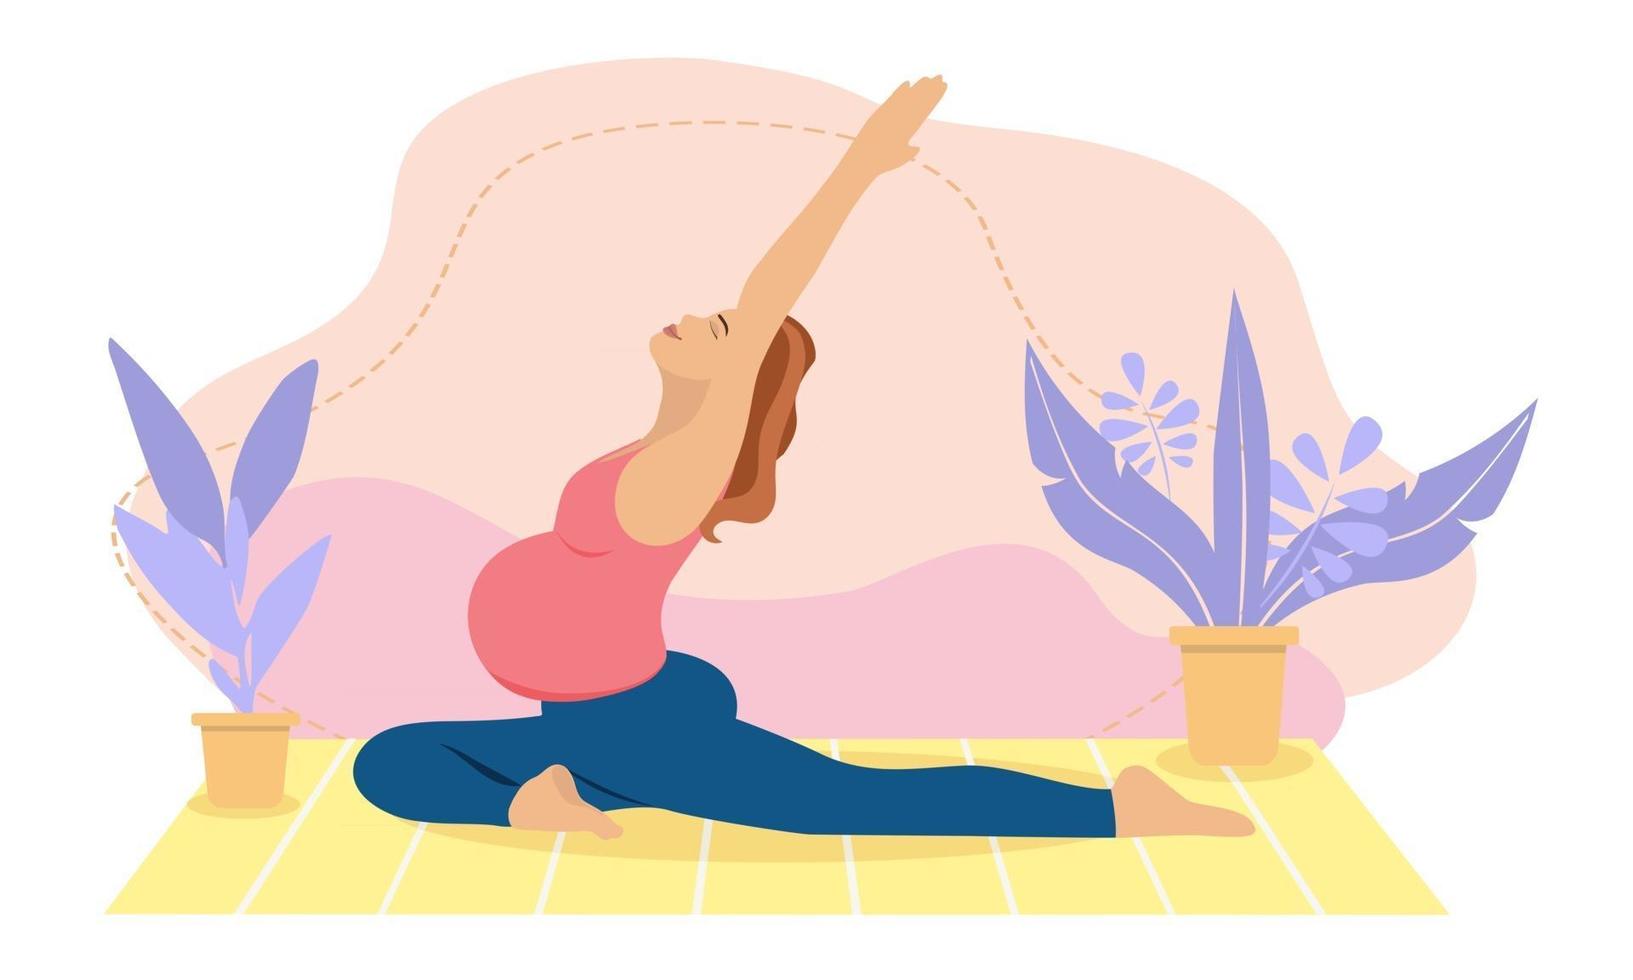 zwangere vrouw die thuis mediteert. concept illustratie voor prenatale yoga, meditatie, ontspannen, recreatie, gezonde levensstijl. illustratie in platte cartoonstijl. vector